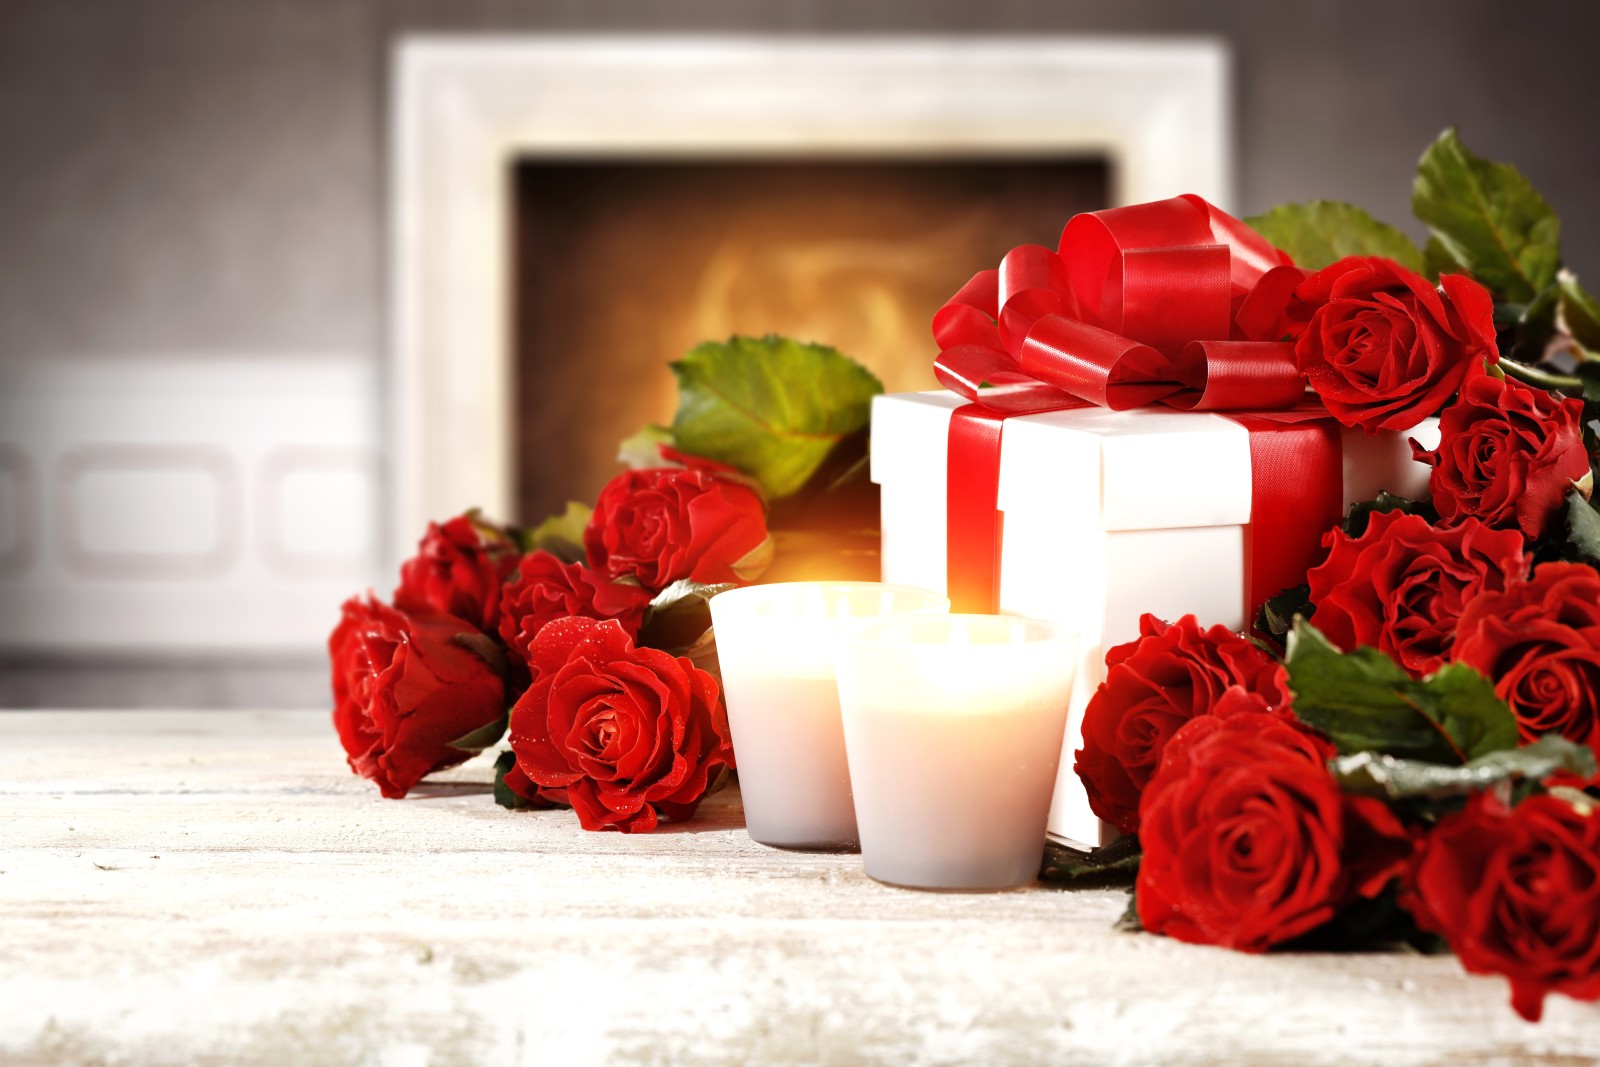 赤, 愛, ロマンチック, 贈り物, バラ, 赤いバラ, フラワーズ, 心臓